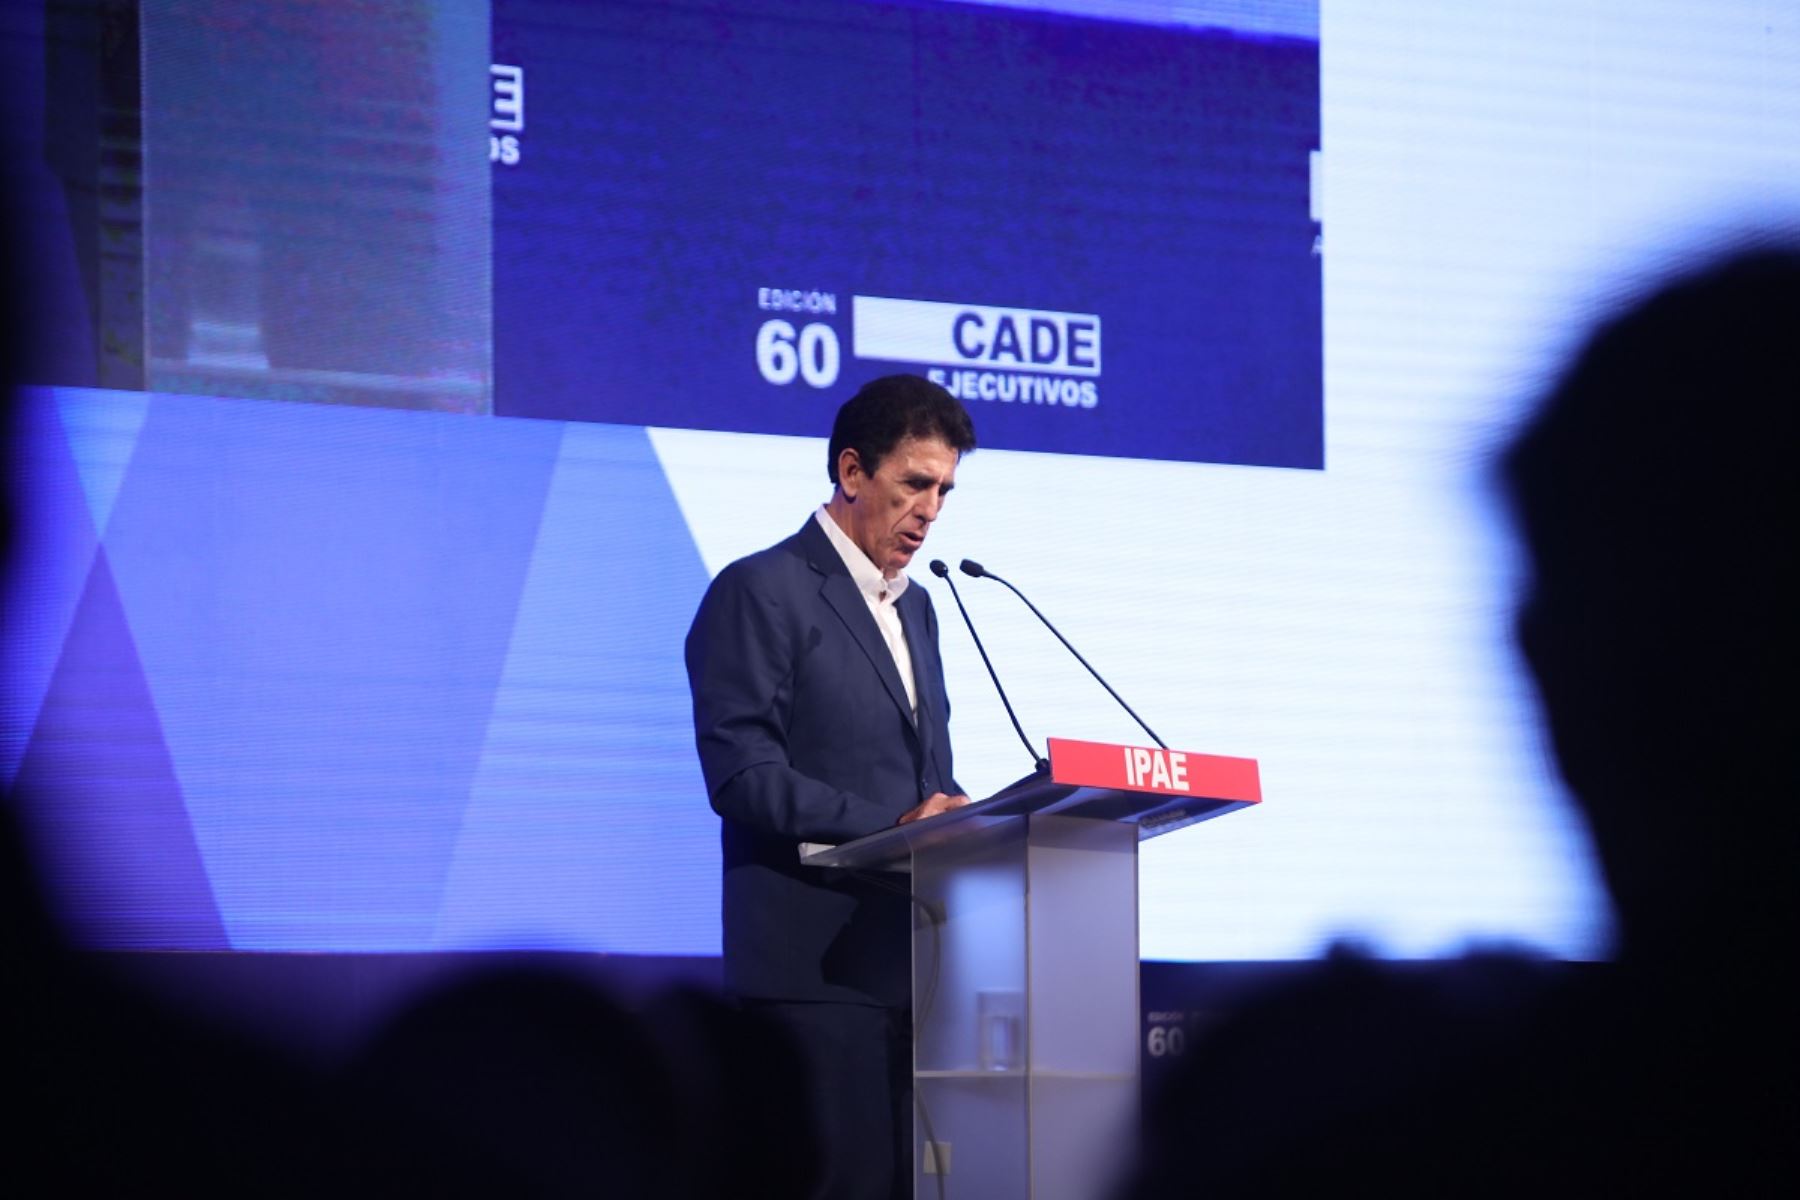 Gonzalo Galdos, Presidente de IPAE Acción Empresarial, en la inauguración del CADE Ejecutivos 2022. Foto: Cortesía.